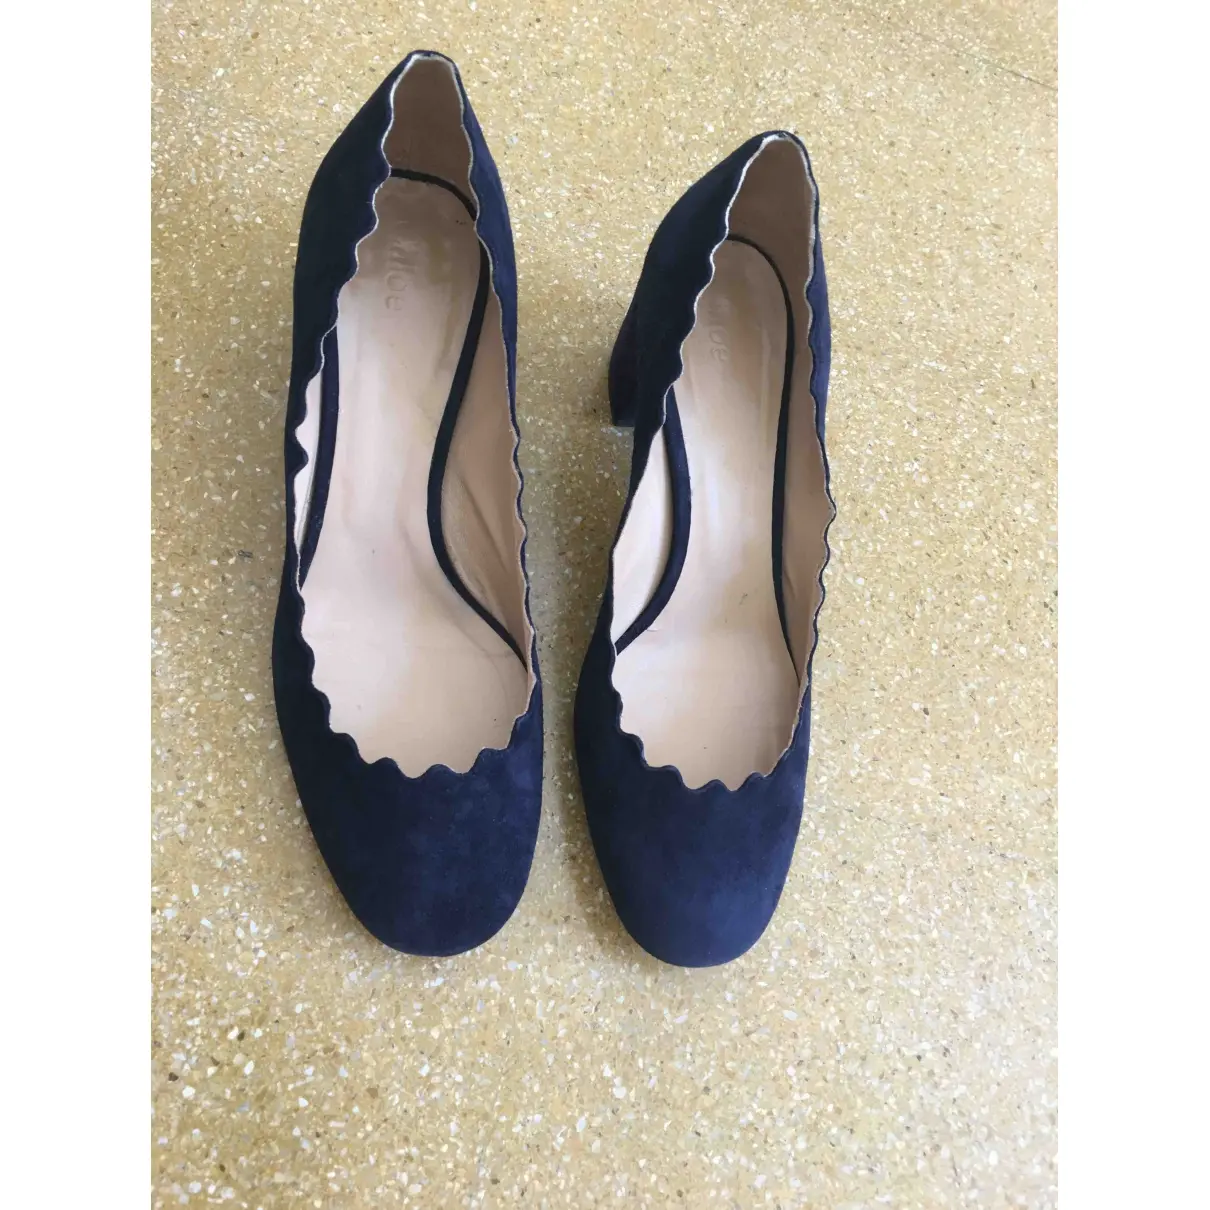 Chloé Lauren heels for sale